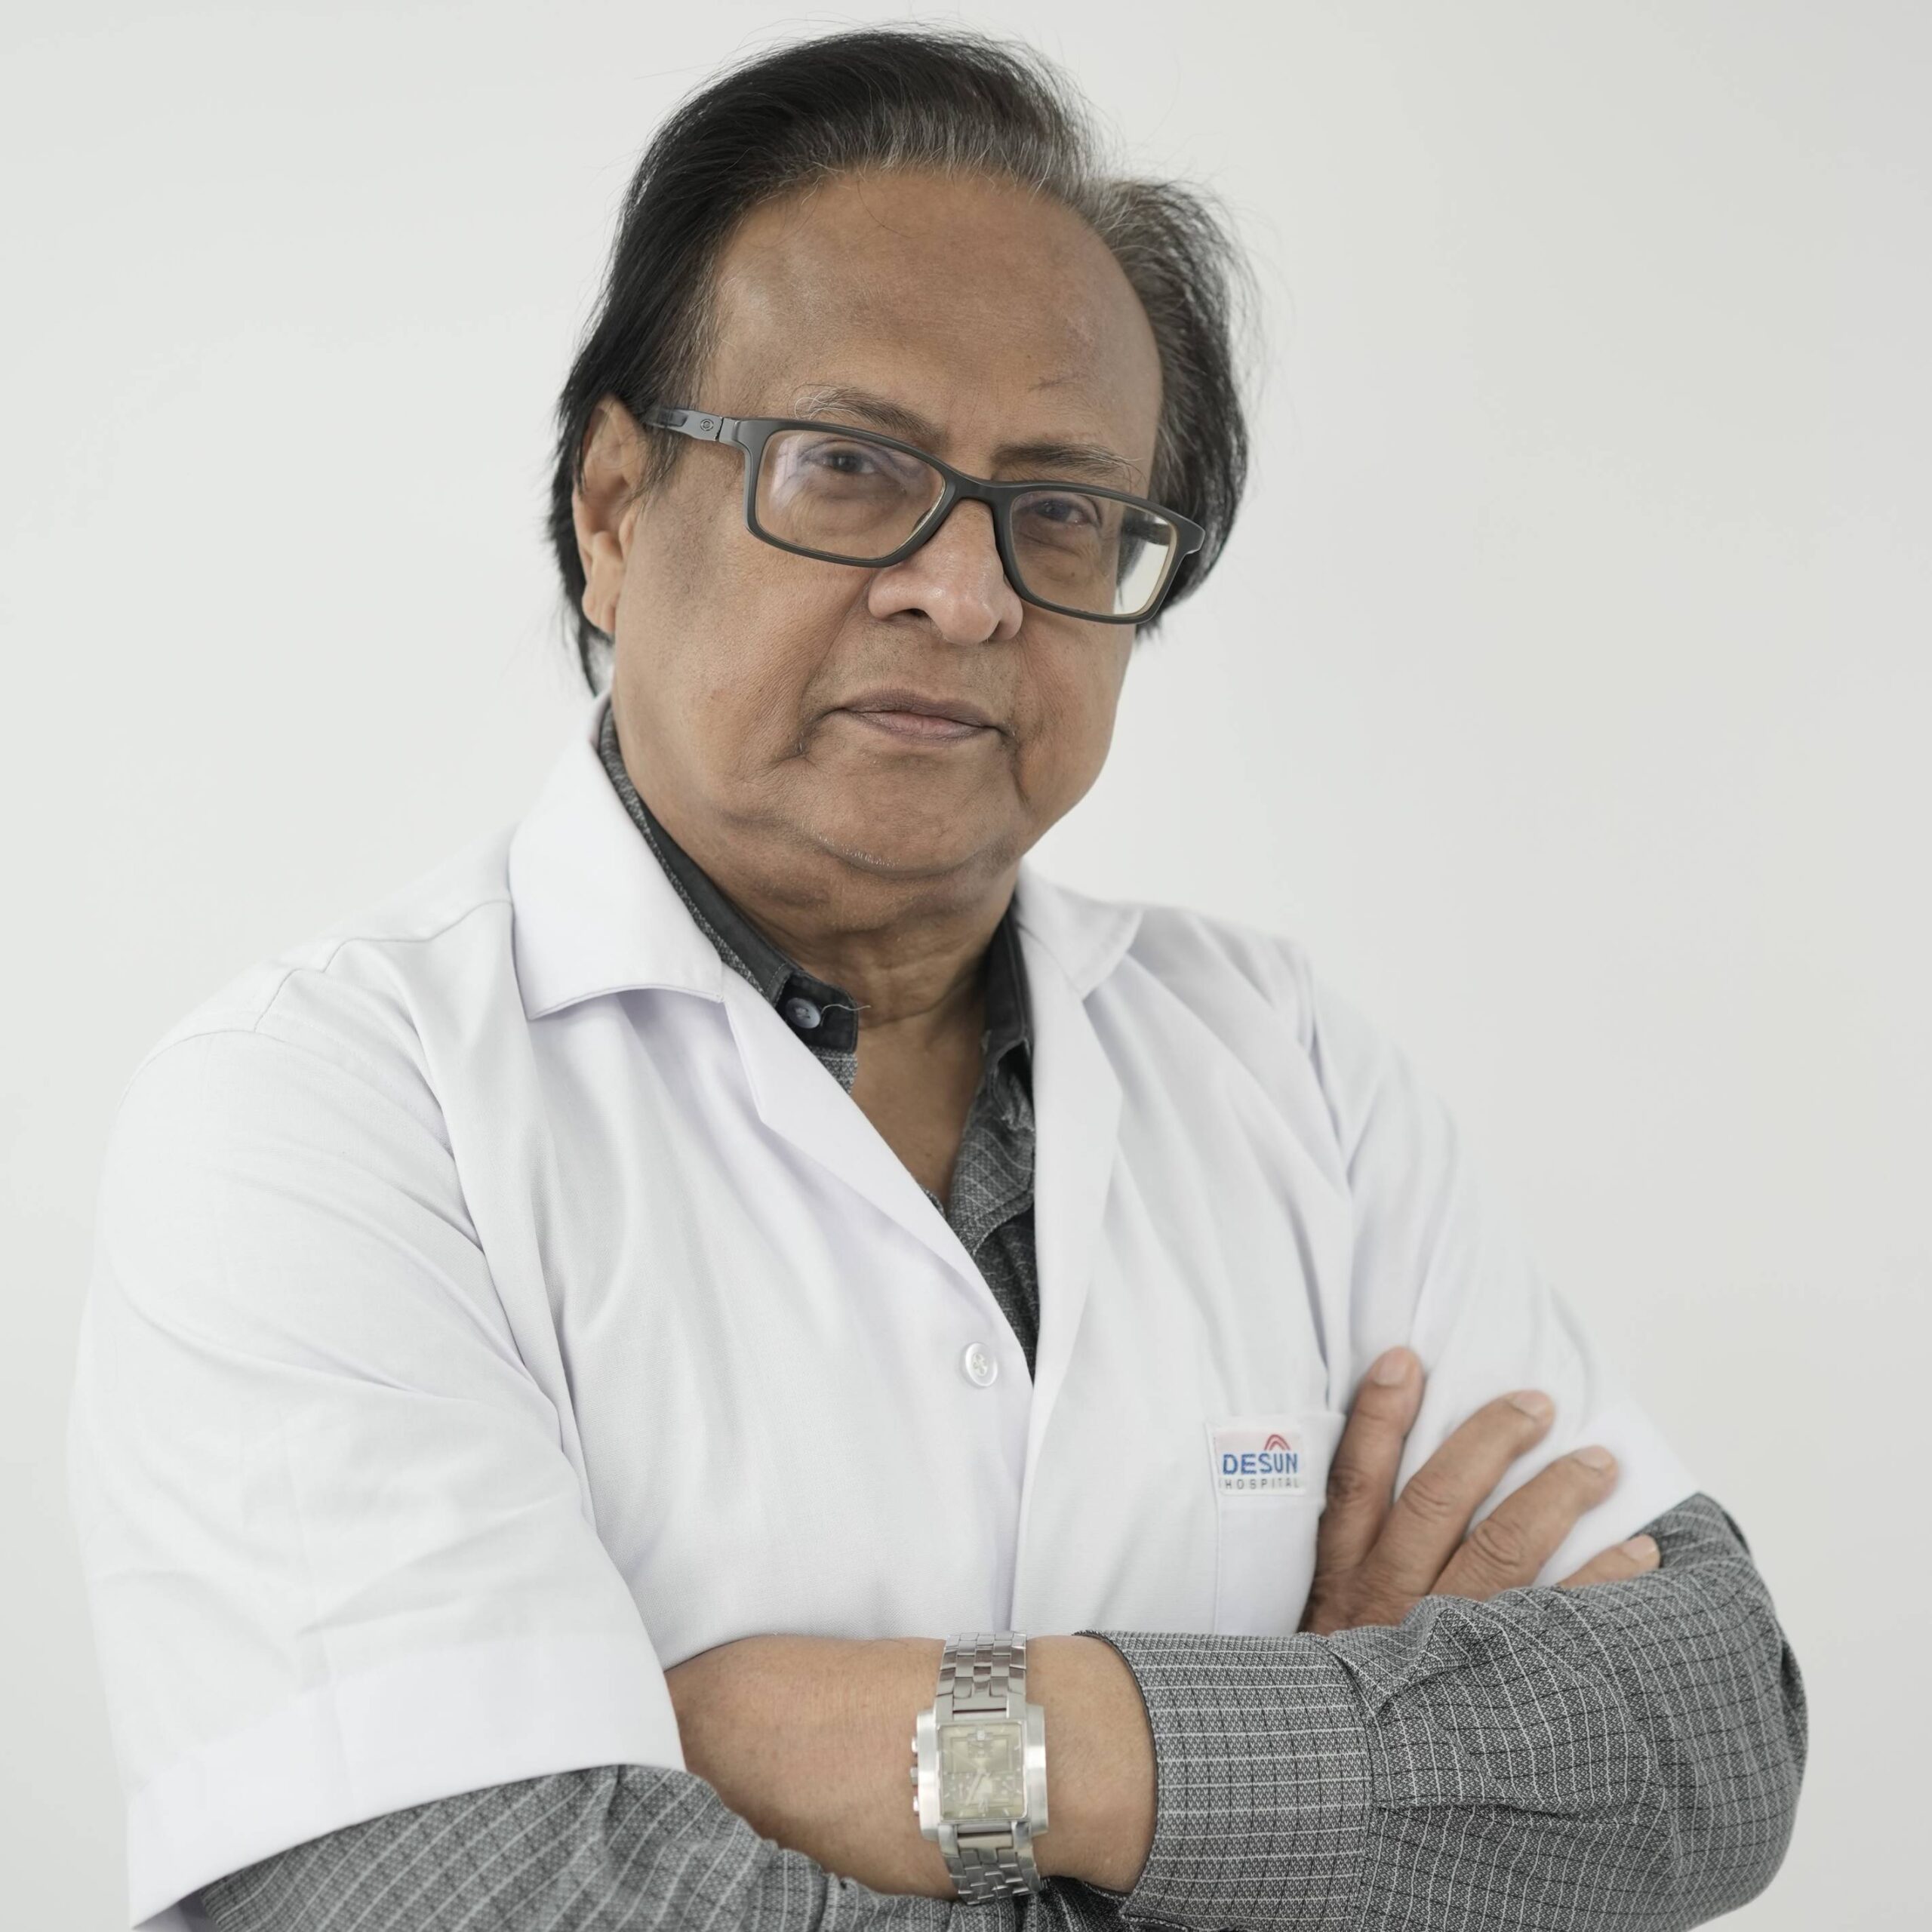 Dr. Kunal Sengupta